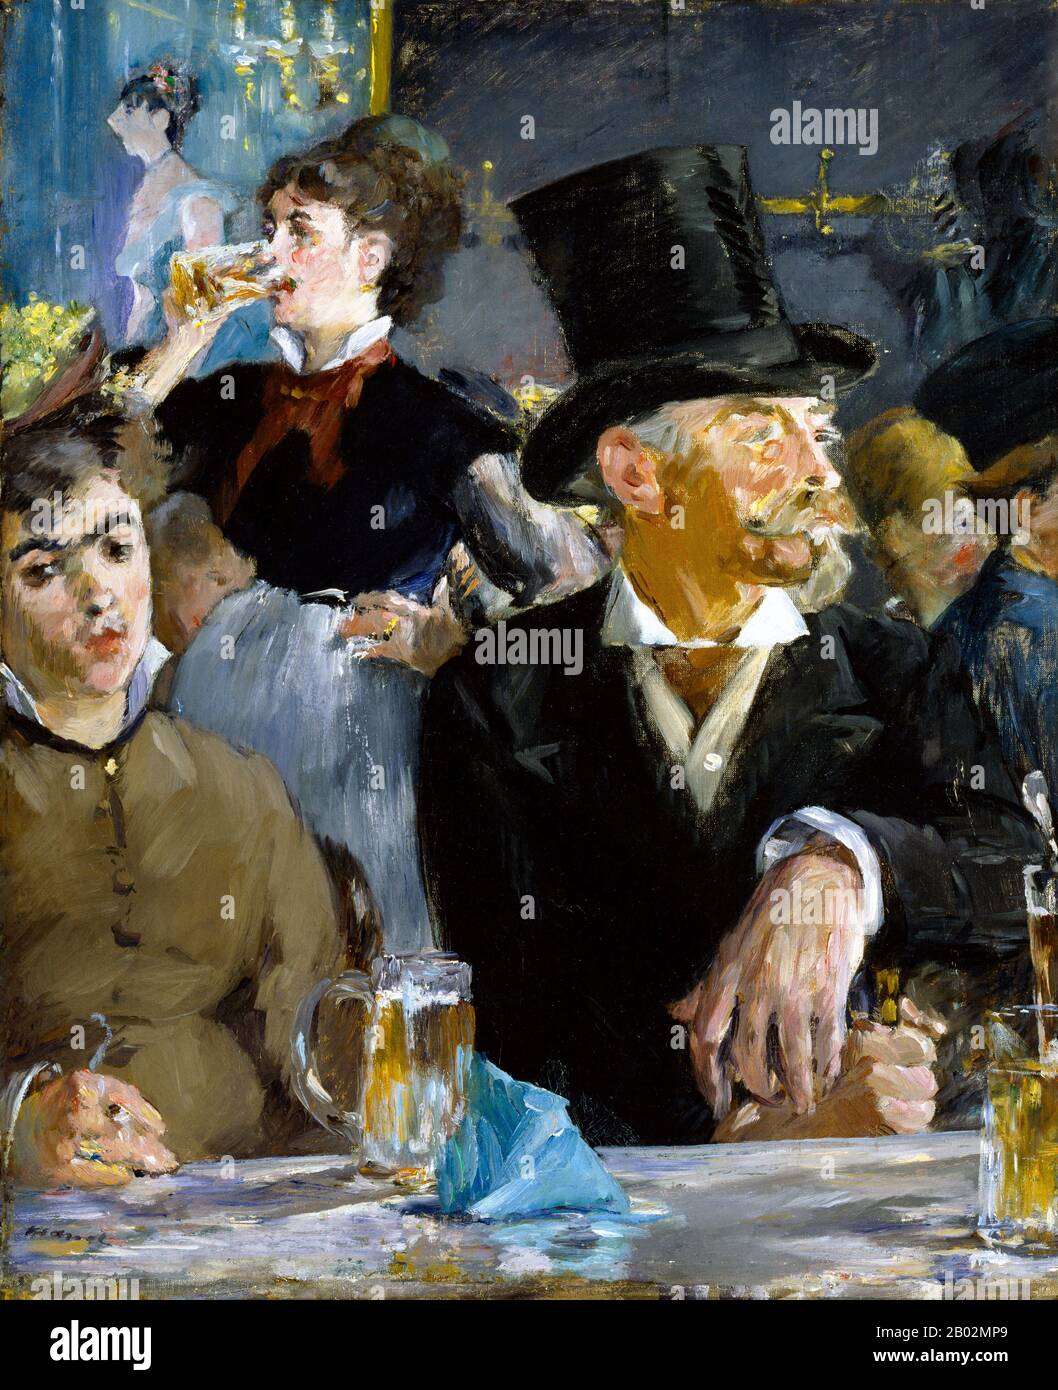 Der impressionistische Maler Édouard Manet nahm oft Cafészenen auf, die das soziale Leben am Ende des neunzehnten Jahrhunderts darstellen, wie es in diesem Gemälde, Dem Café-Konzert, dargestellt ist. Die Kulisse wurde als Brasserie Reichshoffen am Boulevard Rochechouart identifiziert. Manet zeigt uns Männer und Frauen in den neuen Brasserien und Cafés von Paris, die dem Betrachter einen alternativen Blick auf das neue Pariser Leben bieten. Manet behauptete, er habe "es oeuvres Aufrichtiges" oder "sinkere Werke" gemalt. Die Frauen, die in diesen Szenen dargestellt wurden, umworben gewisse Risiken in Bezug auf Wahrnehmung und Moral. In, Die Café-Co Stockfoto